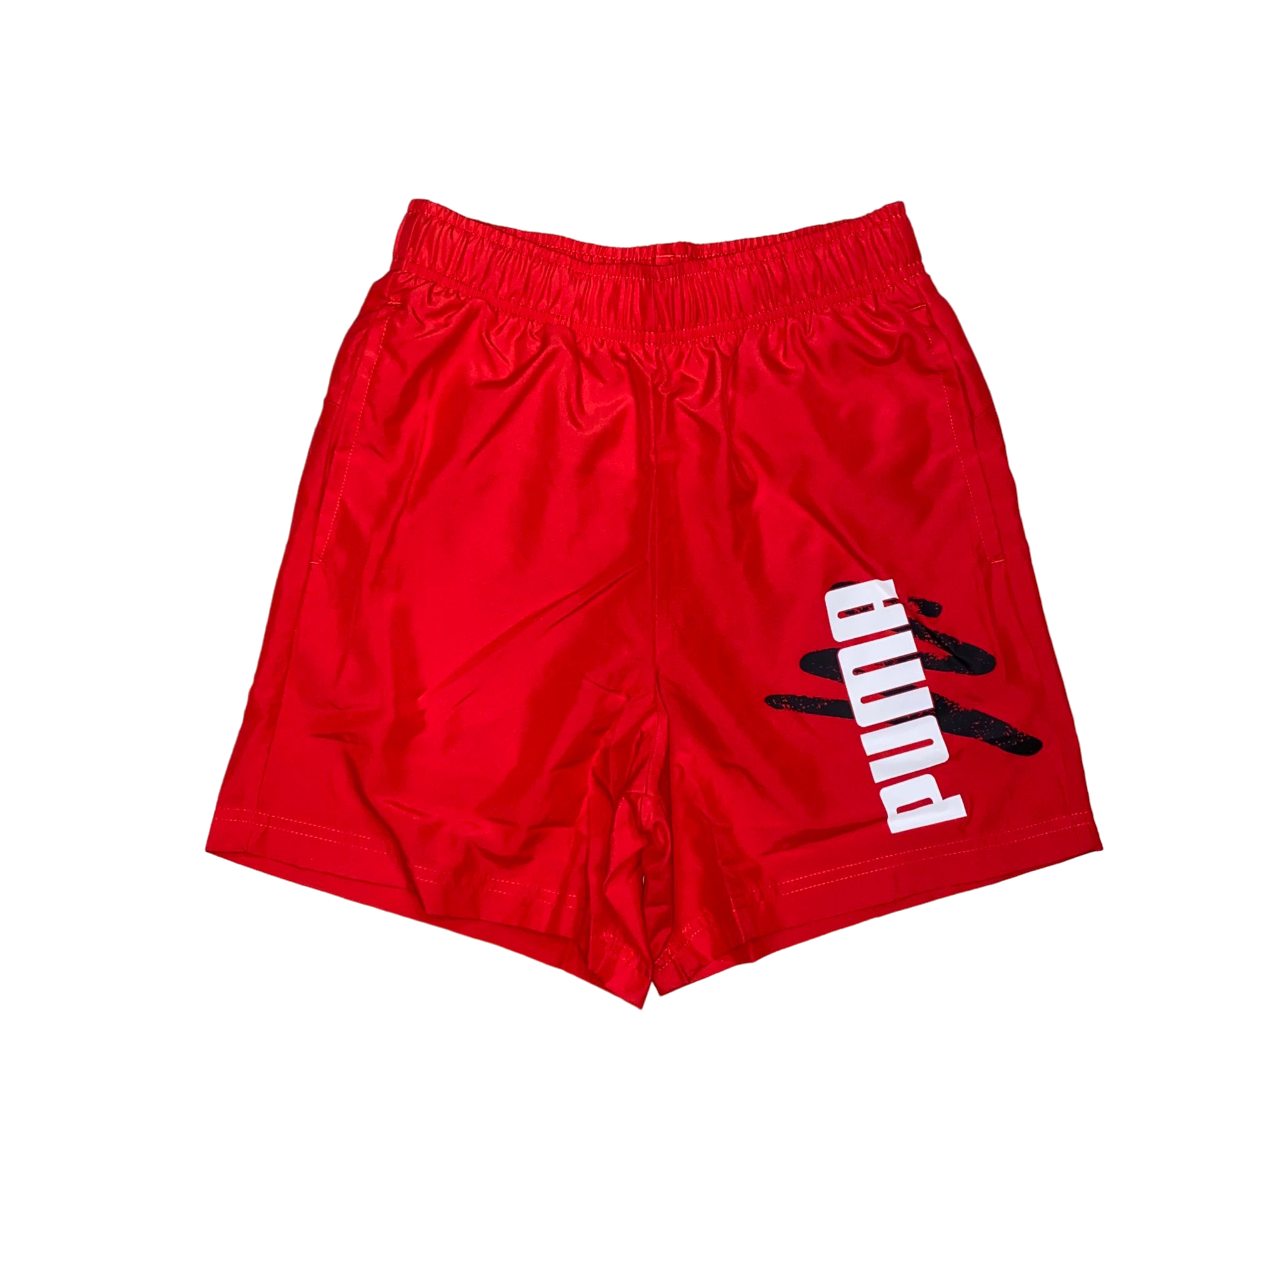 Puma pantaloncino sportivo costume Boxer mare da uomo 678990 11 rosso